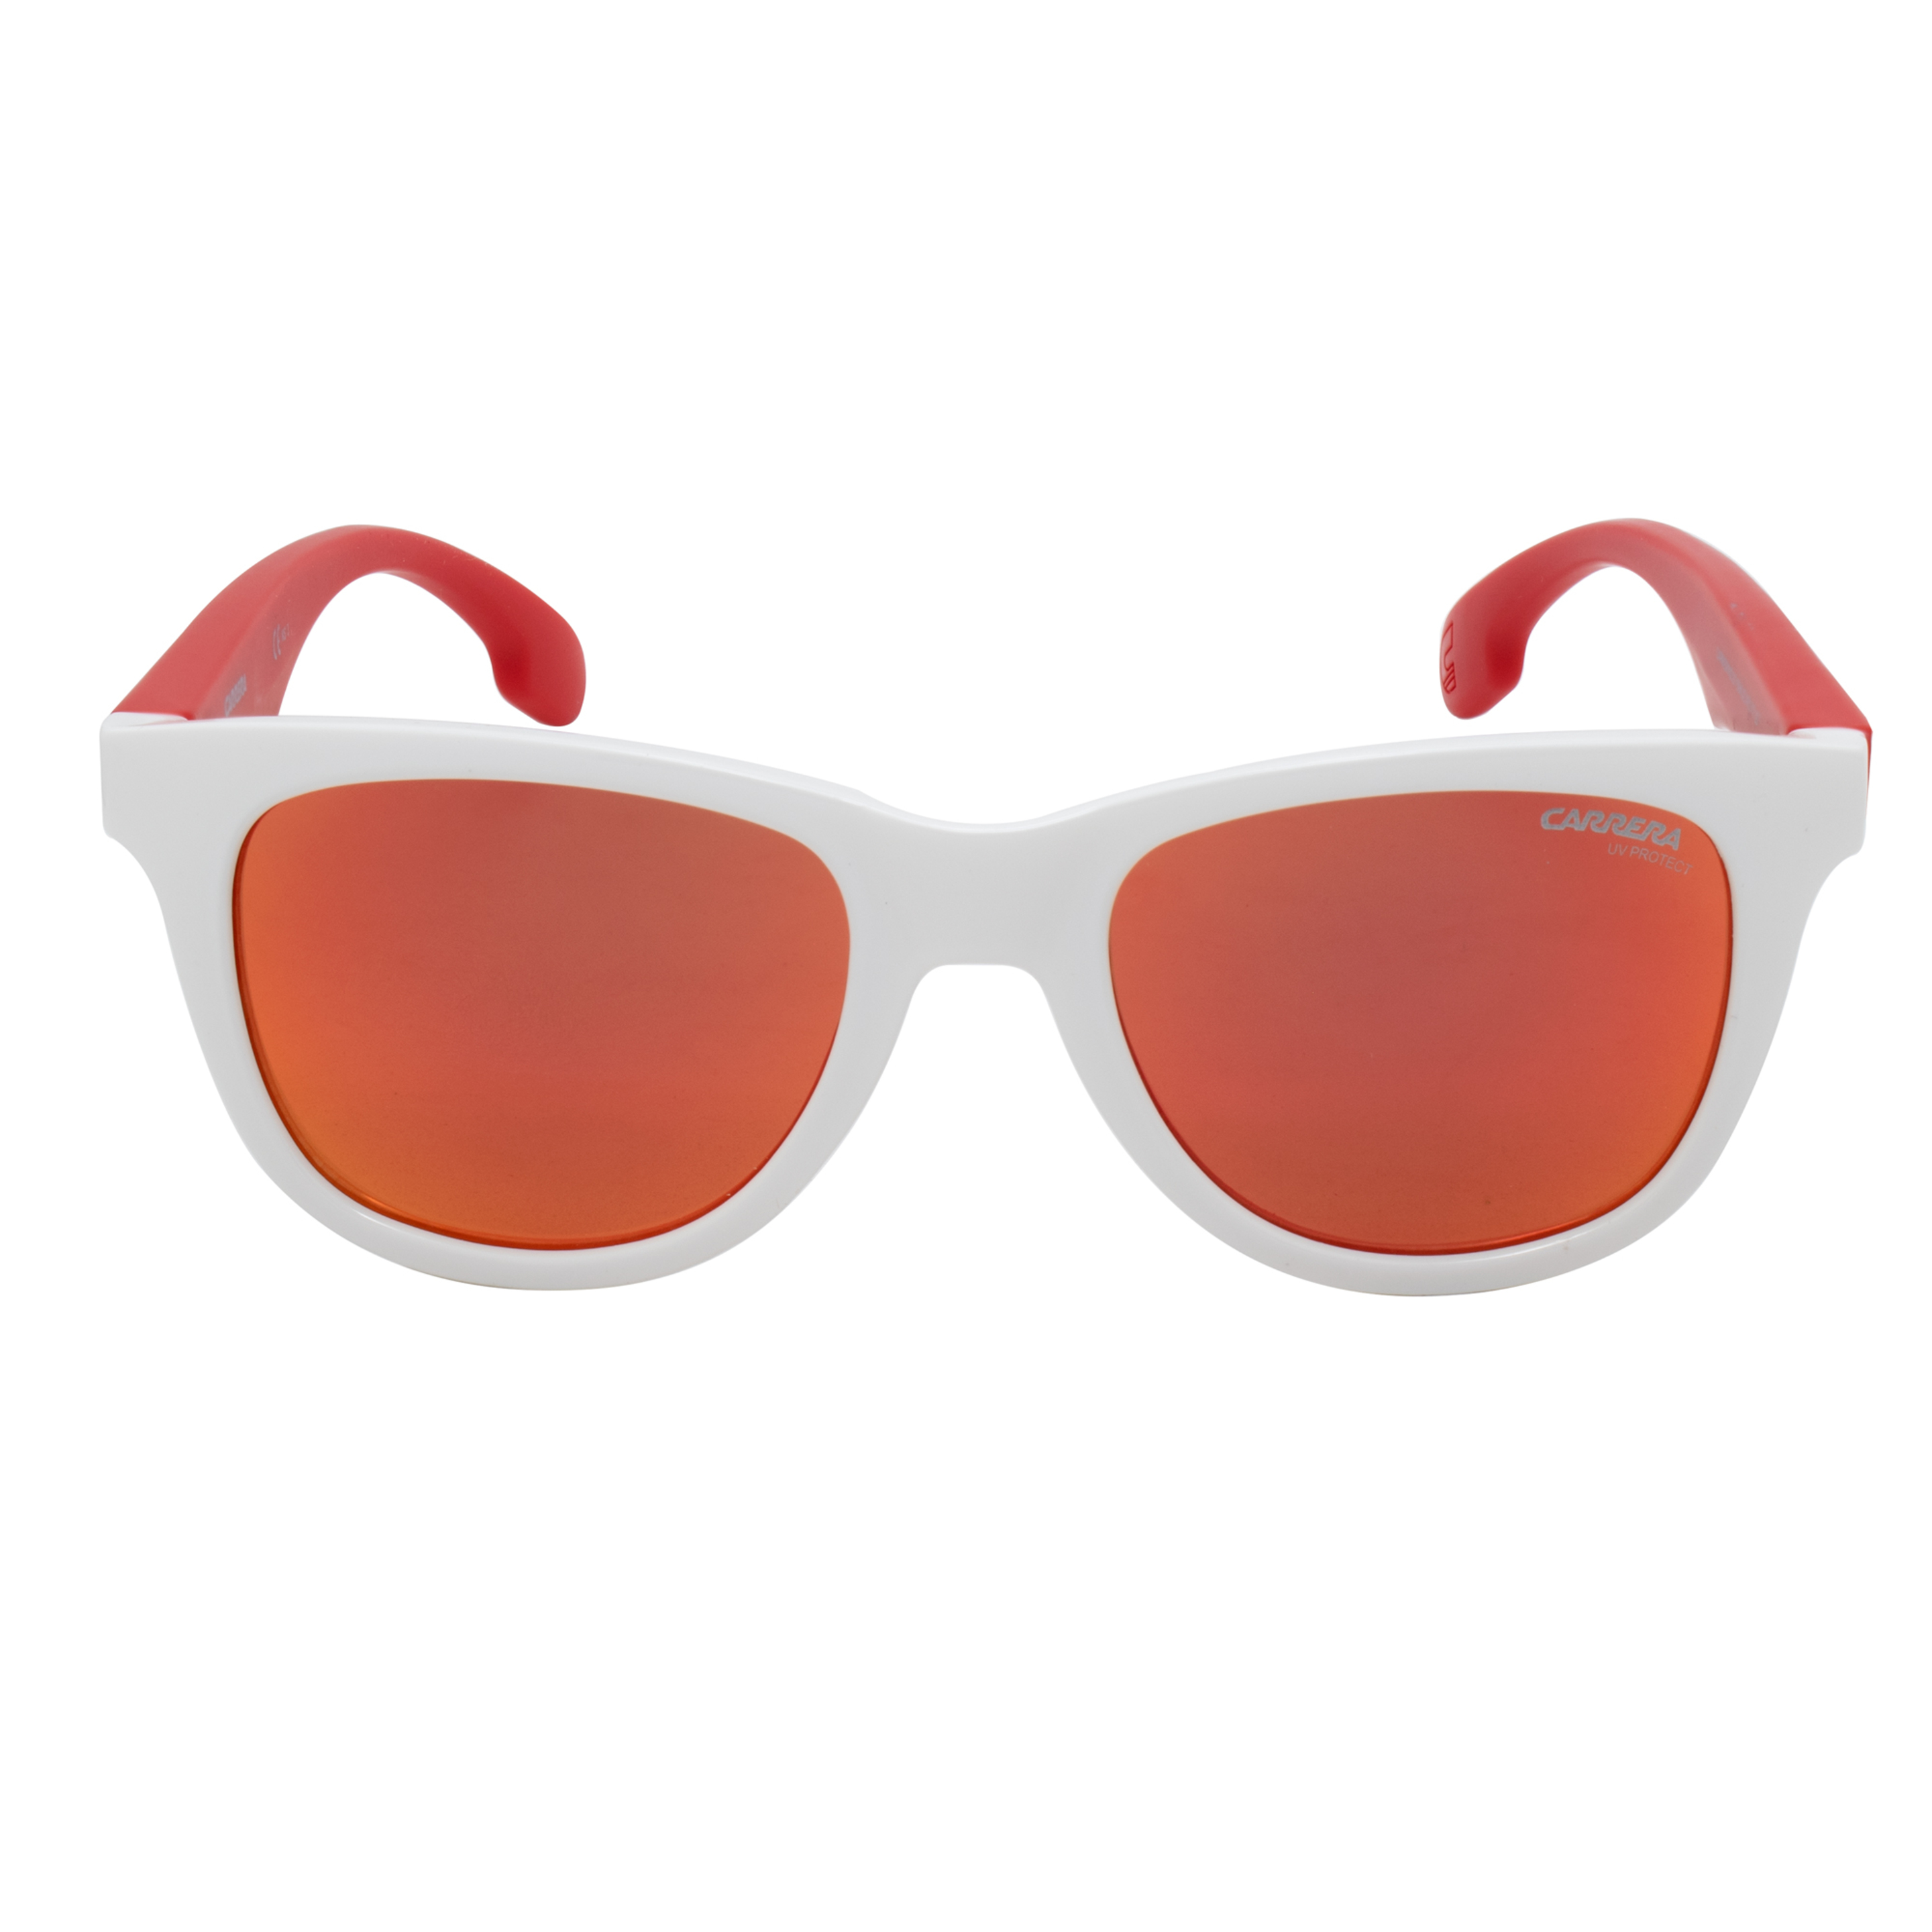 Gafas De Sol Carrera 20-5sk46uz - Blanco  MKP